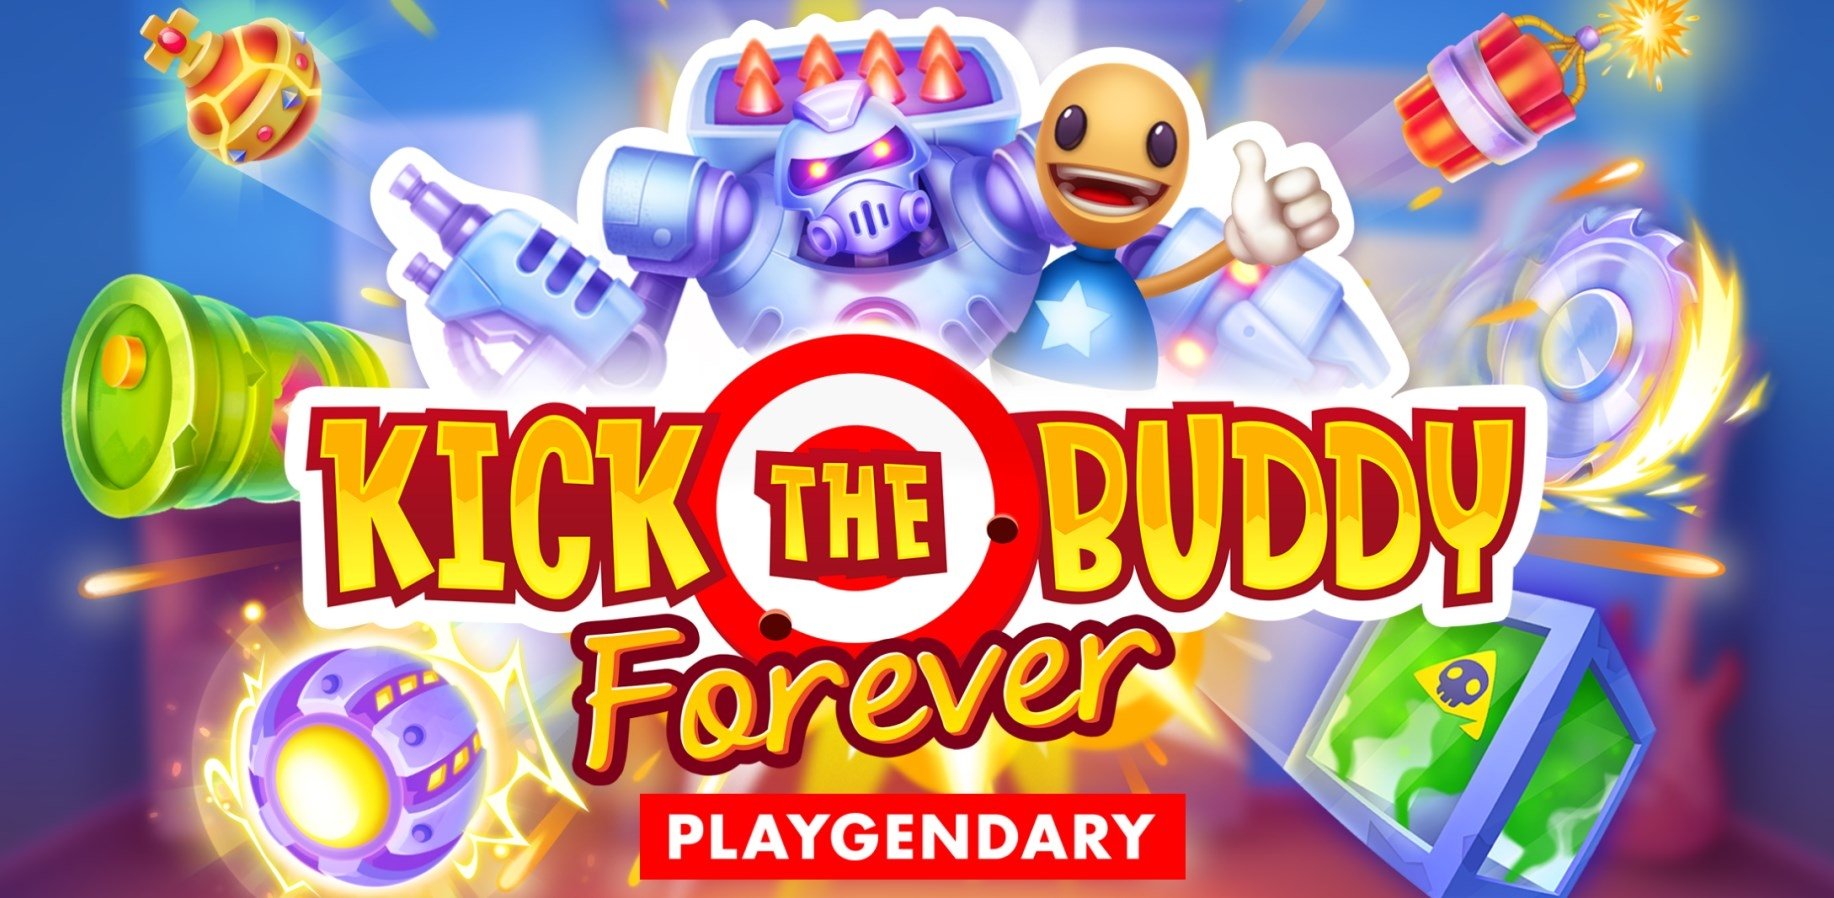 Kick The Buddy Forever 141 Descargar Para Android Apk - roblox wallpapers hd apk app descarga gratis para android